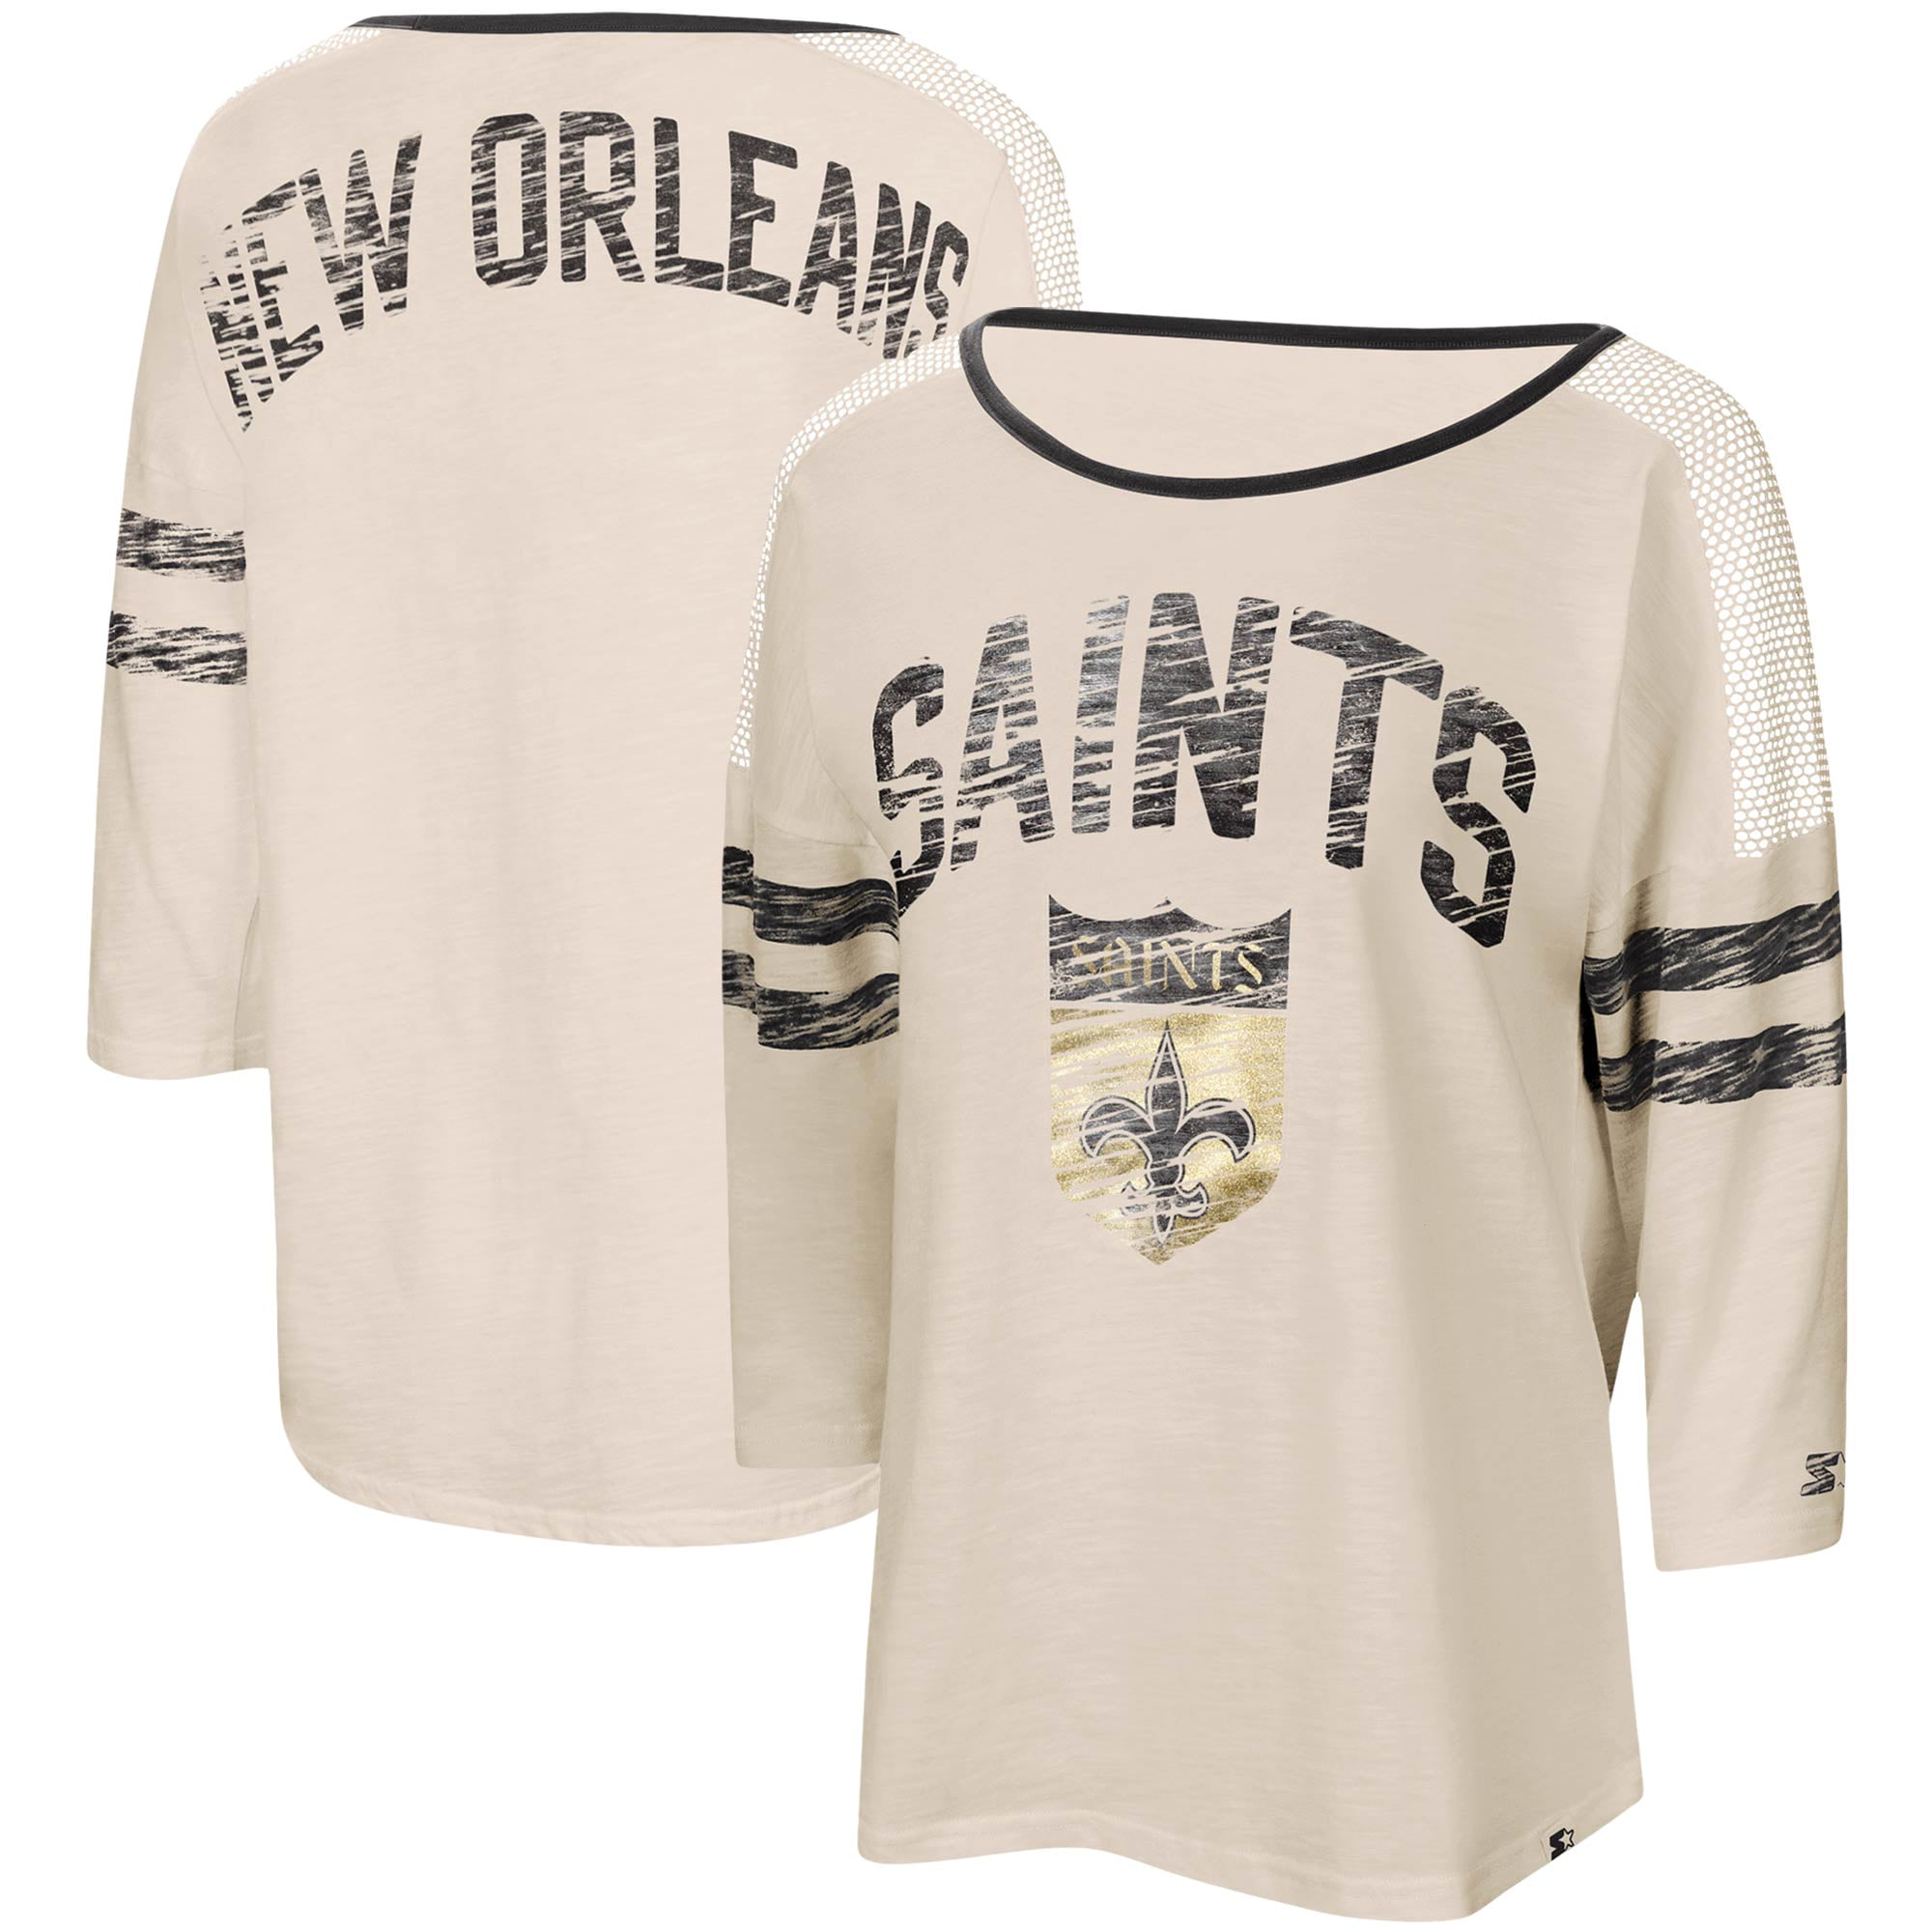 Women's Starter White/Black New Orleans Saints Highlight Scoop Neck 3/4  Sleeve T-Shirt 